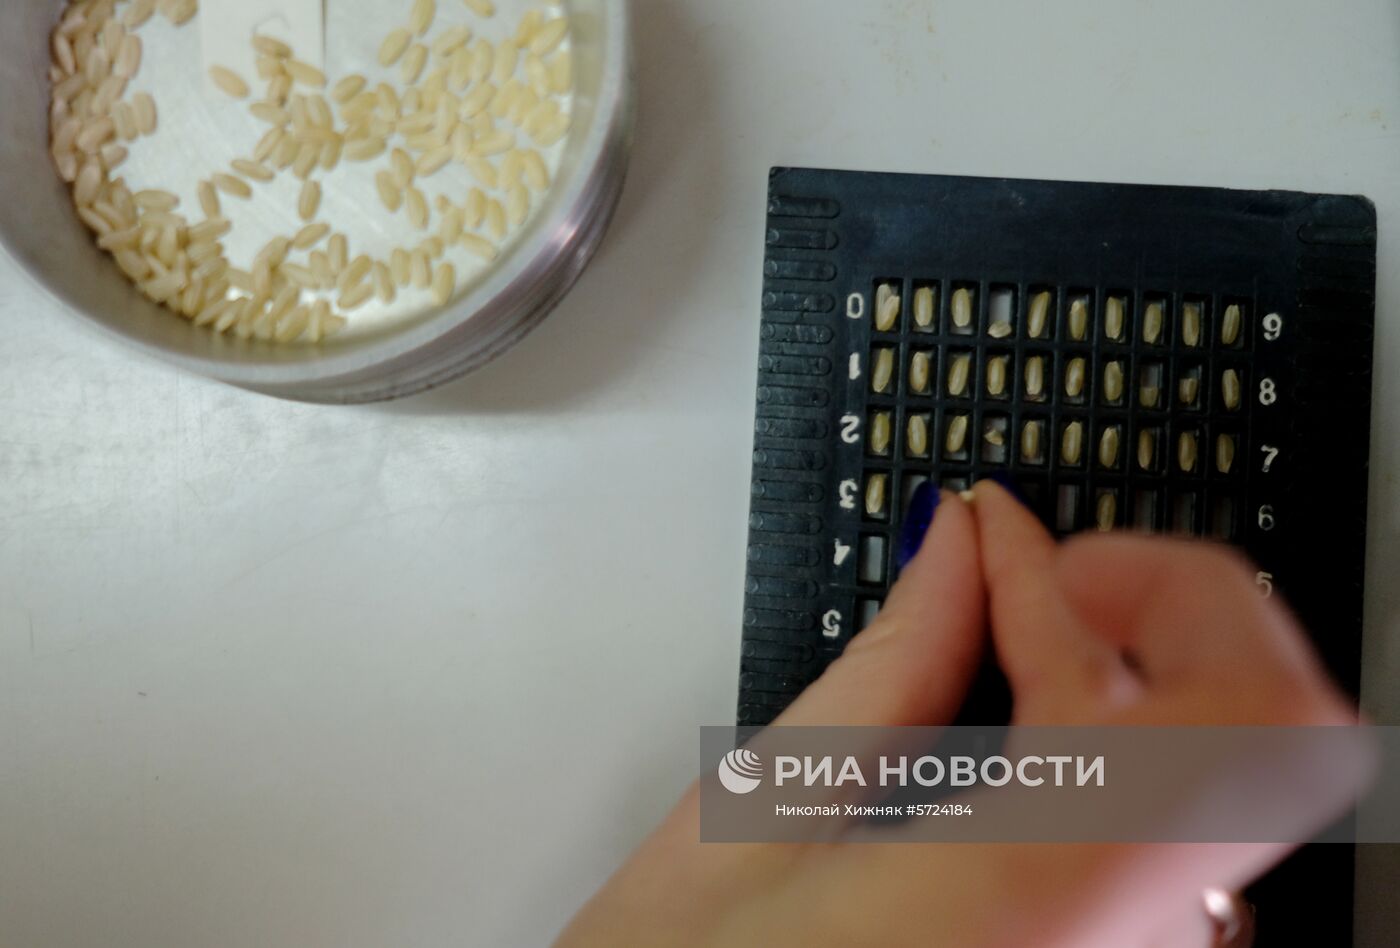 Всероссийский научно-исследовательский институт риса